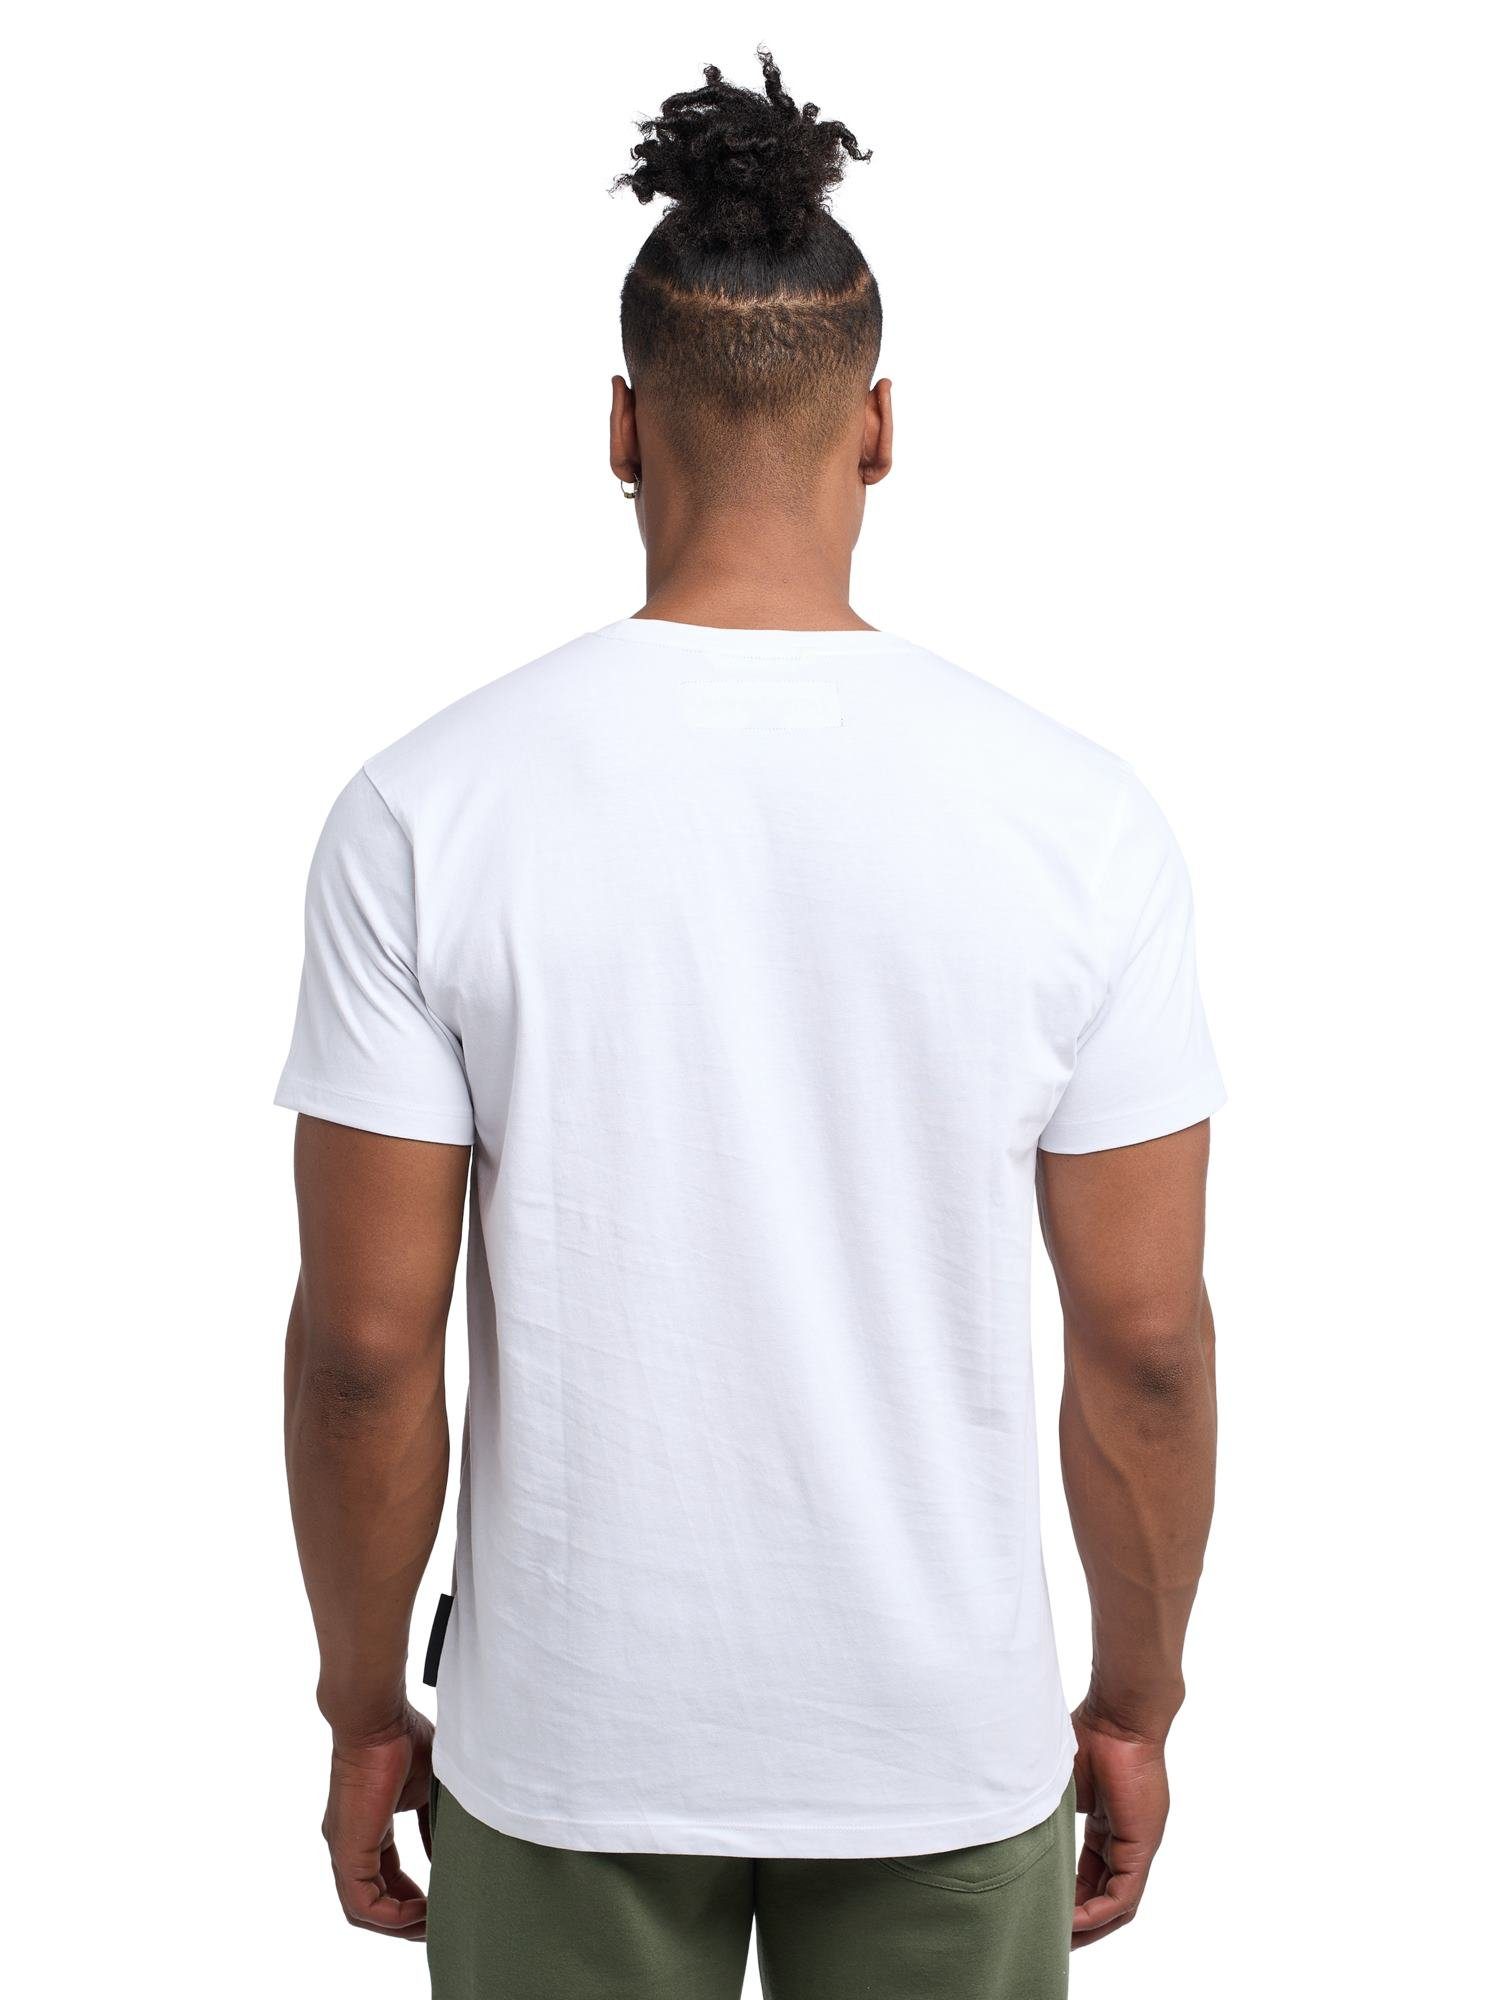 Grün T-Shirt Weiß / Banani Bruno Abbott